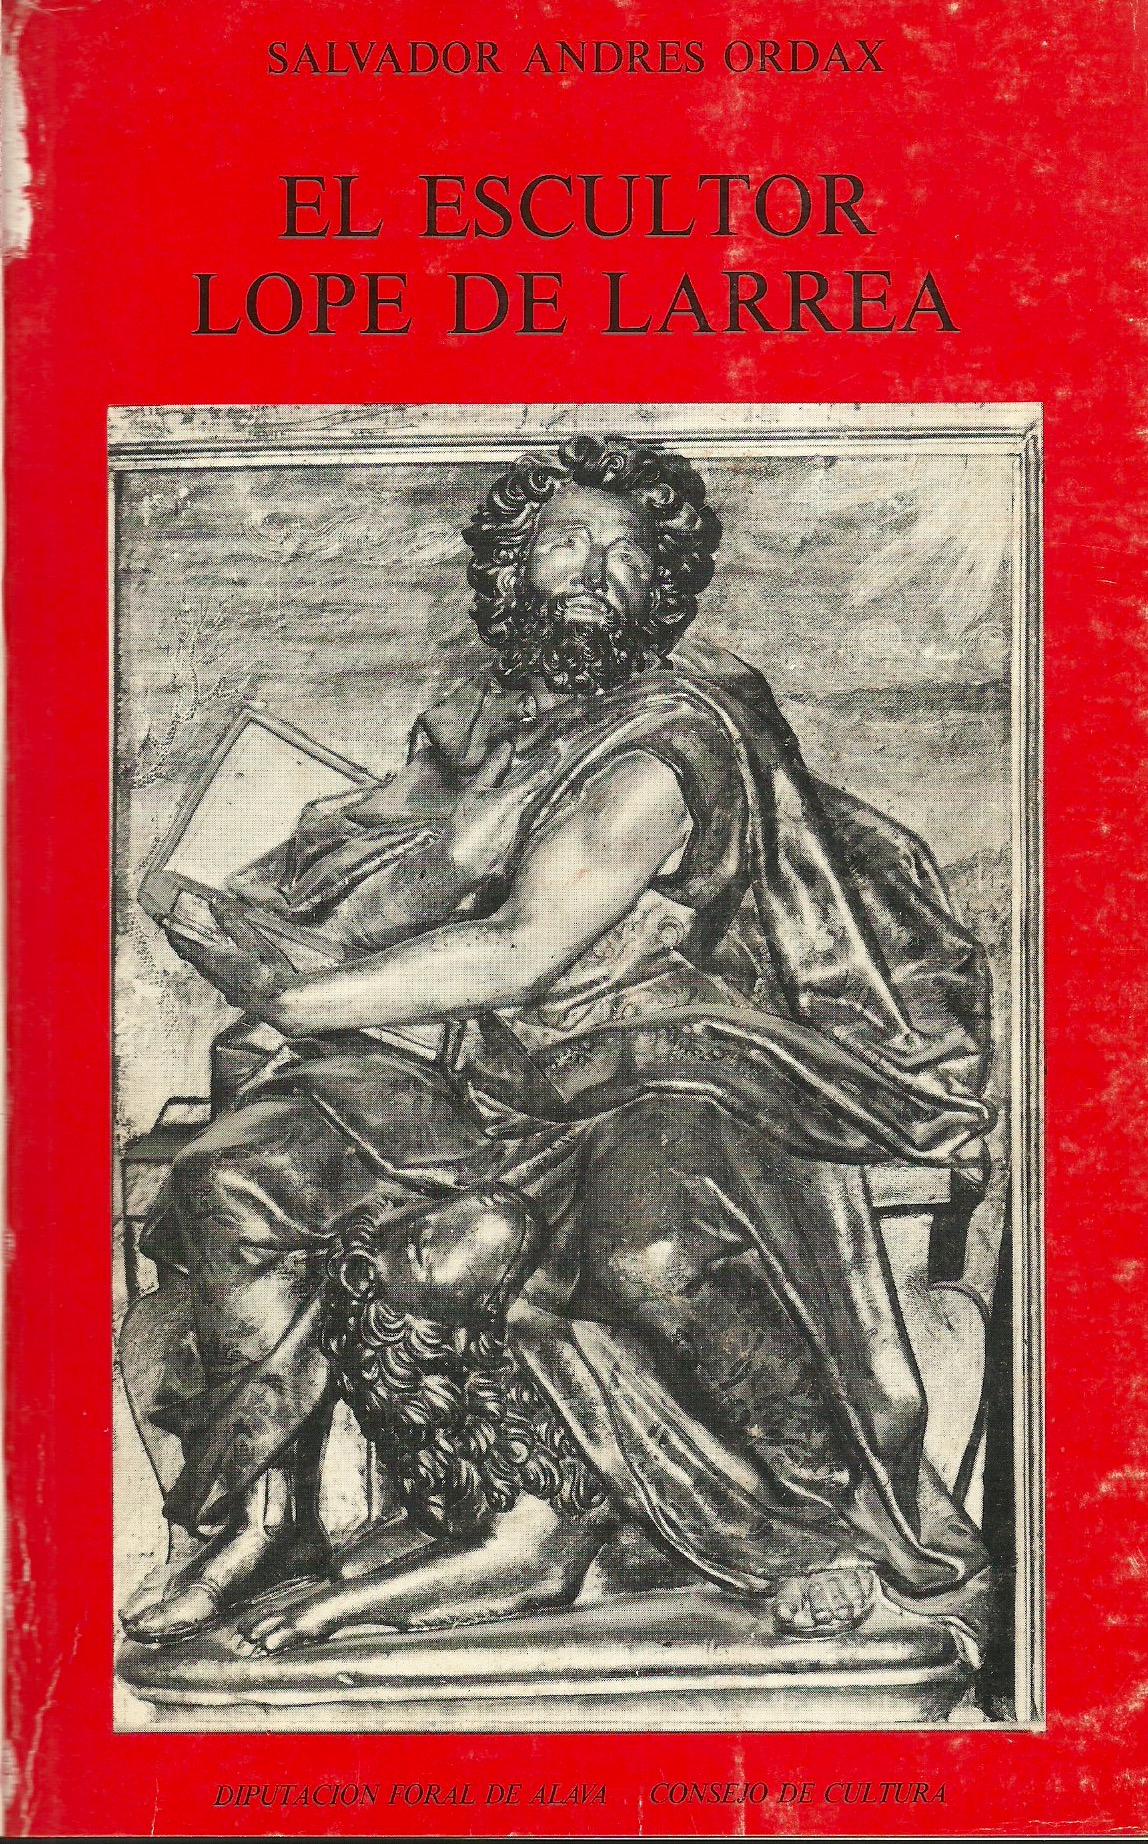 Imagen de portada del libro El escultor Lope de Larrea